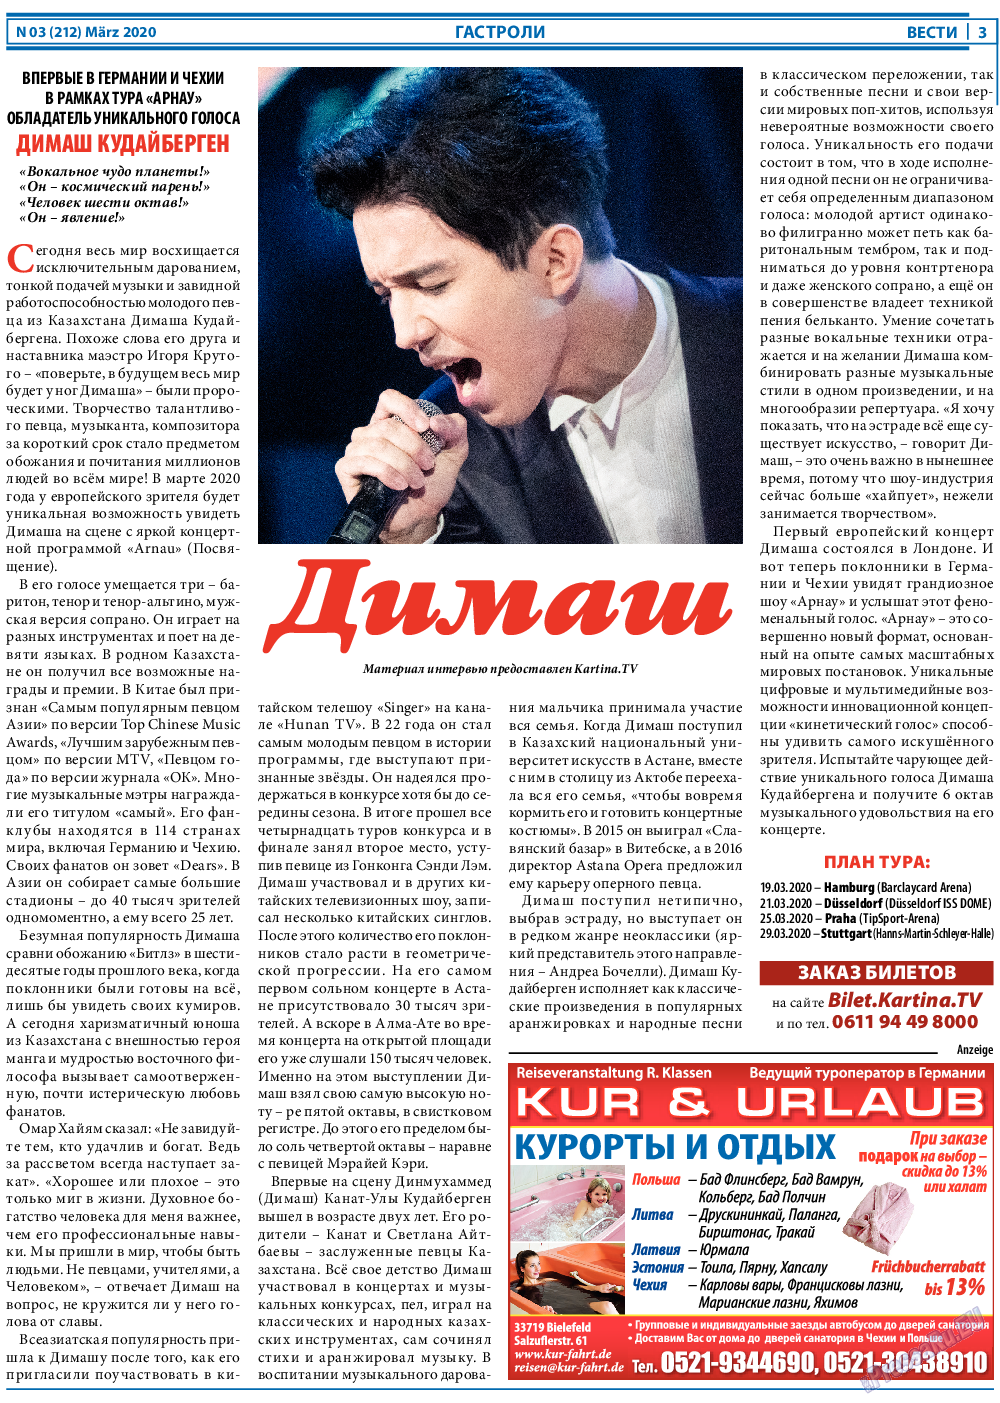 Вести, газета. 2020 №3 стр.3